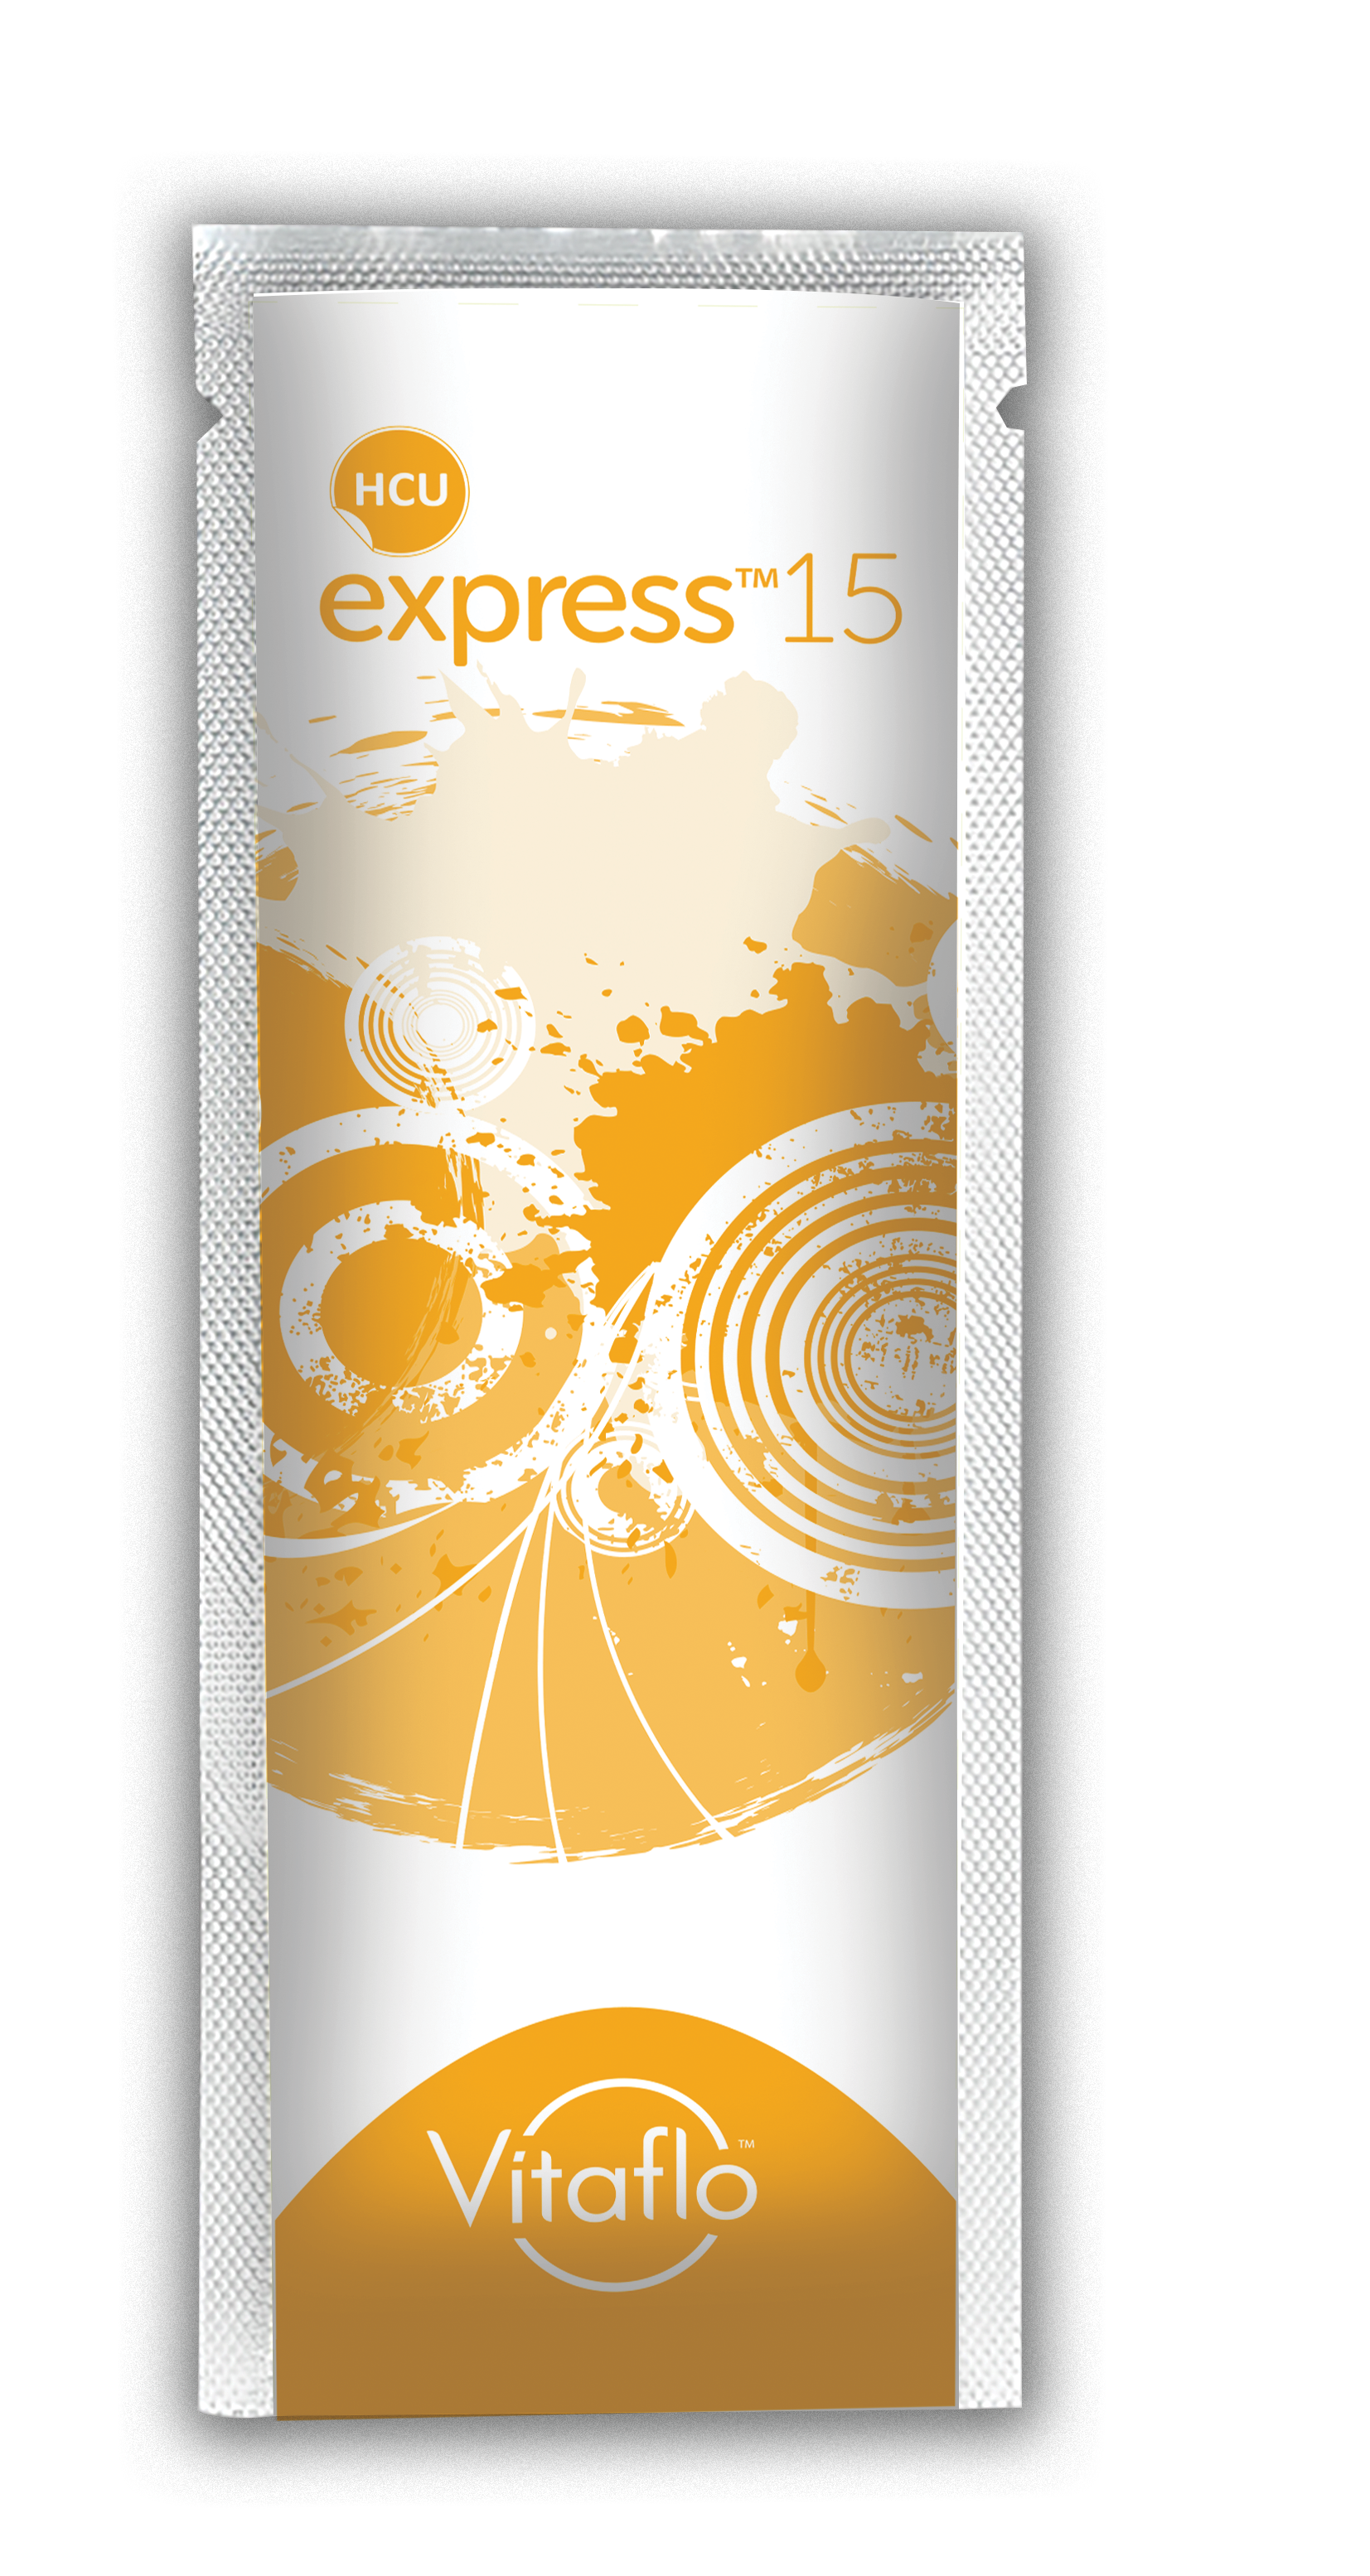 HCU express15™